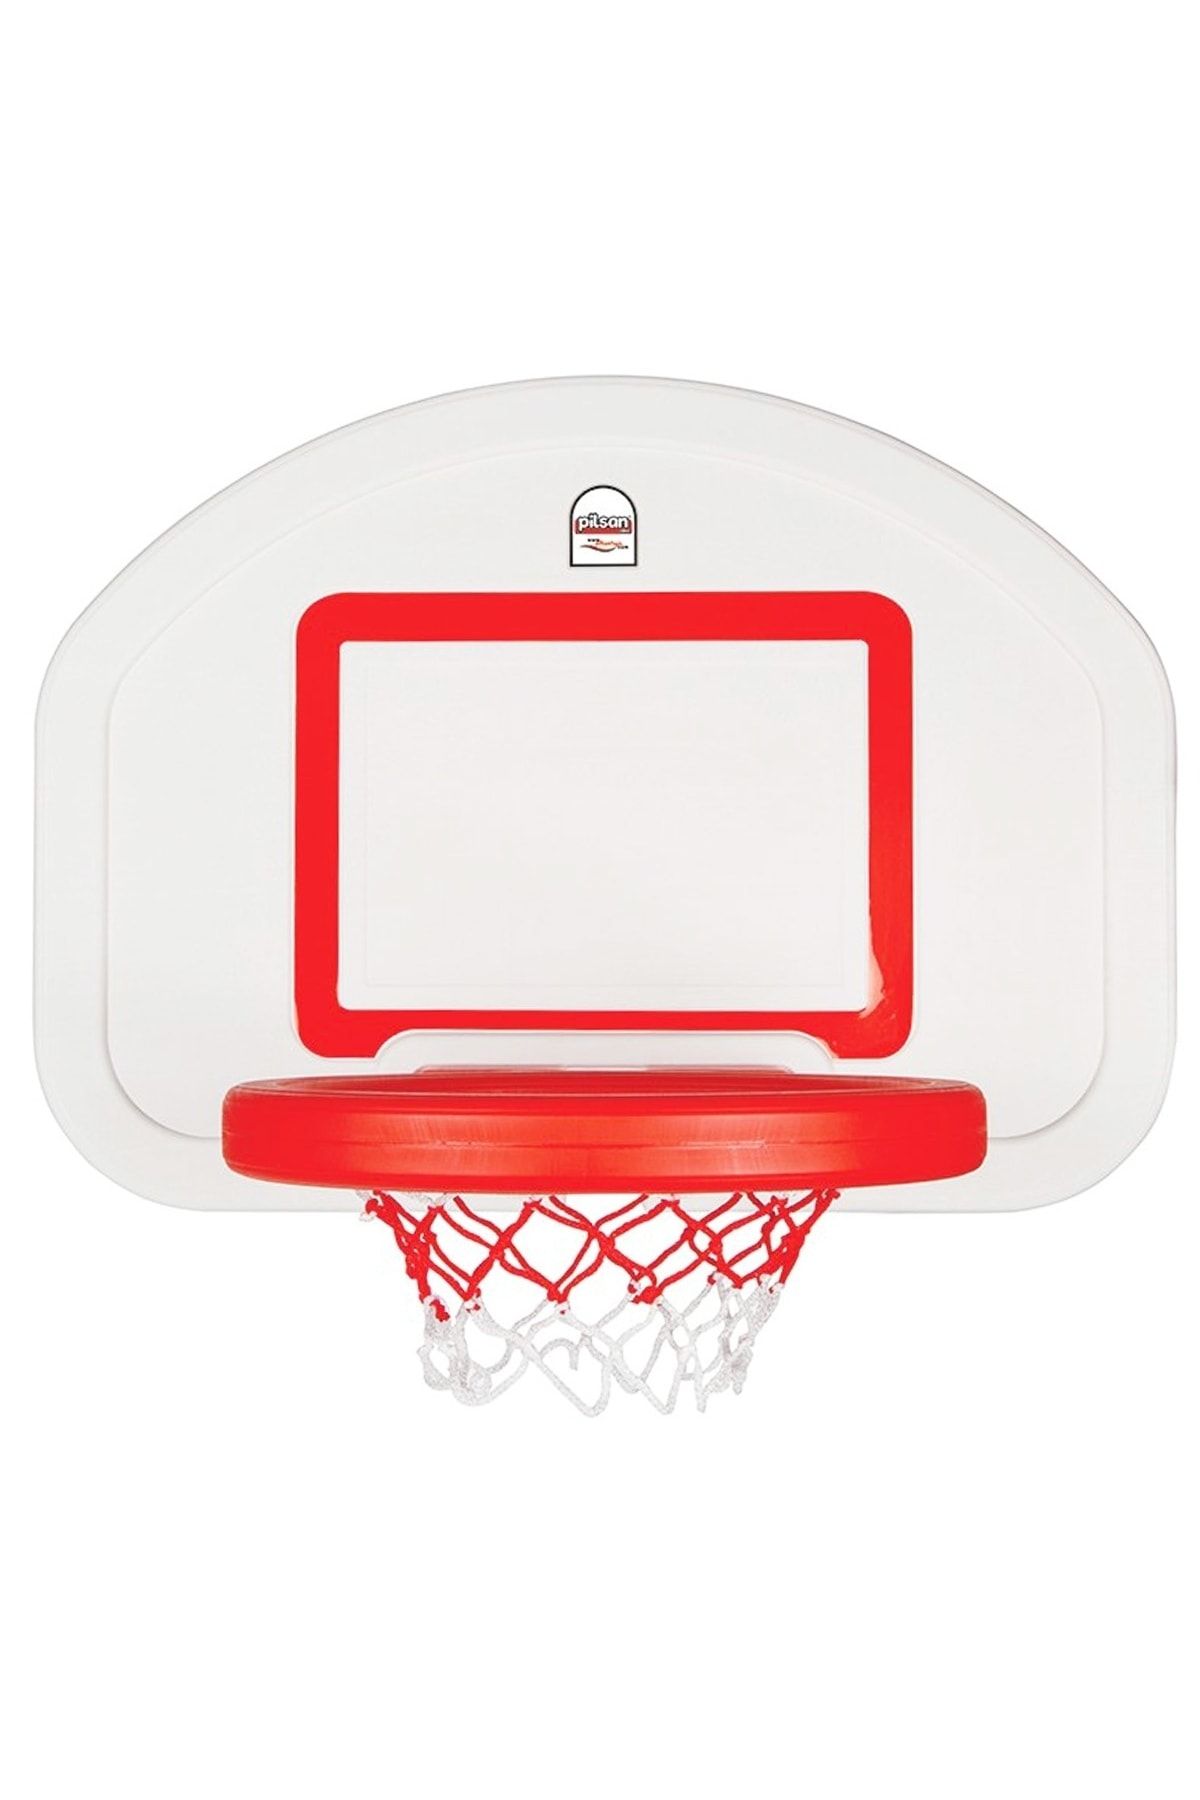 PİLSAN Profesyonel Basket Seti Askılı 03389